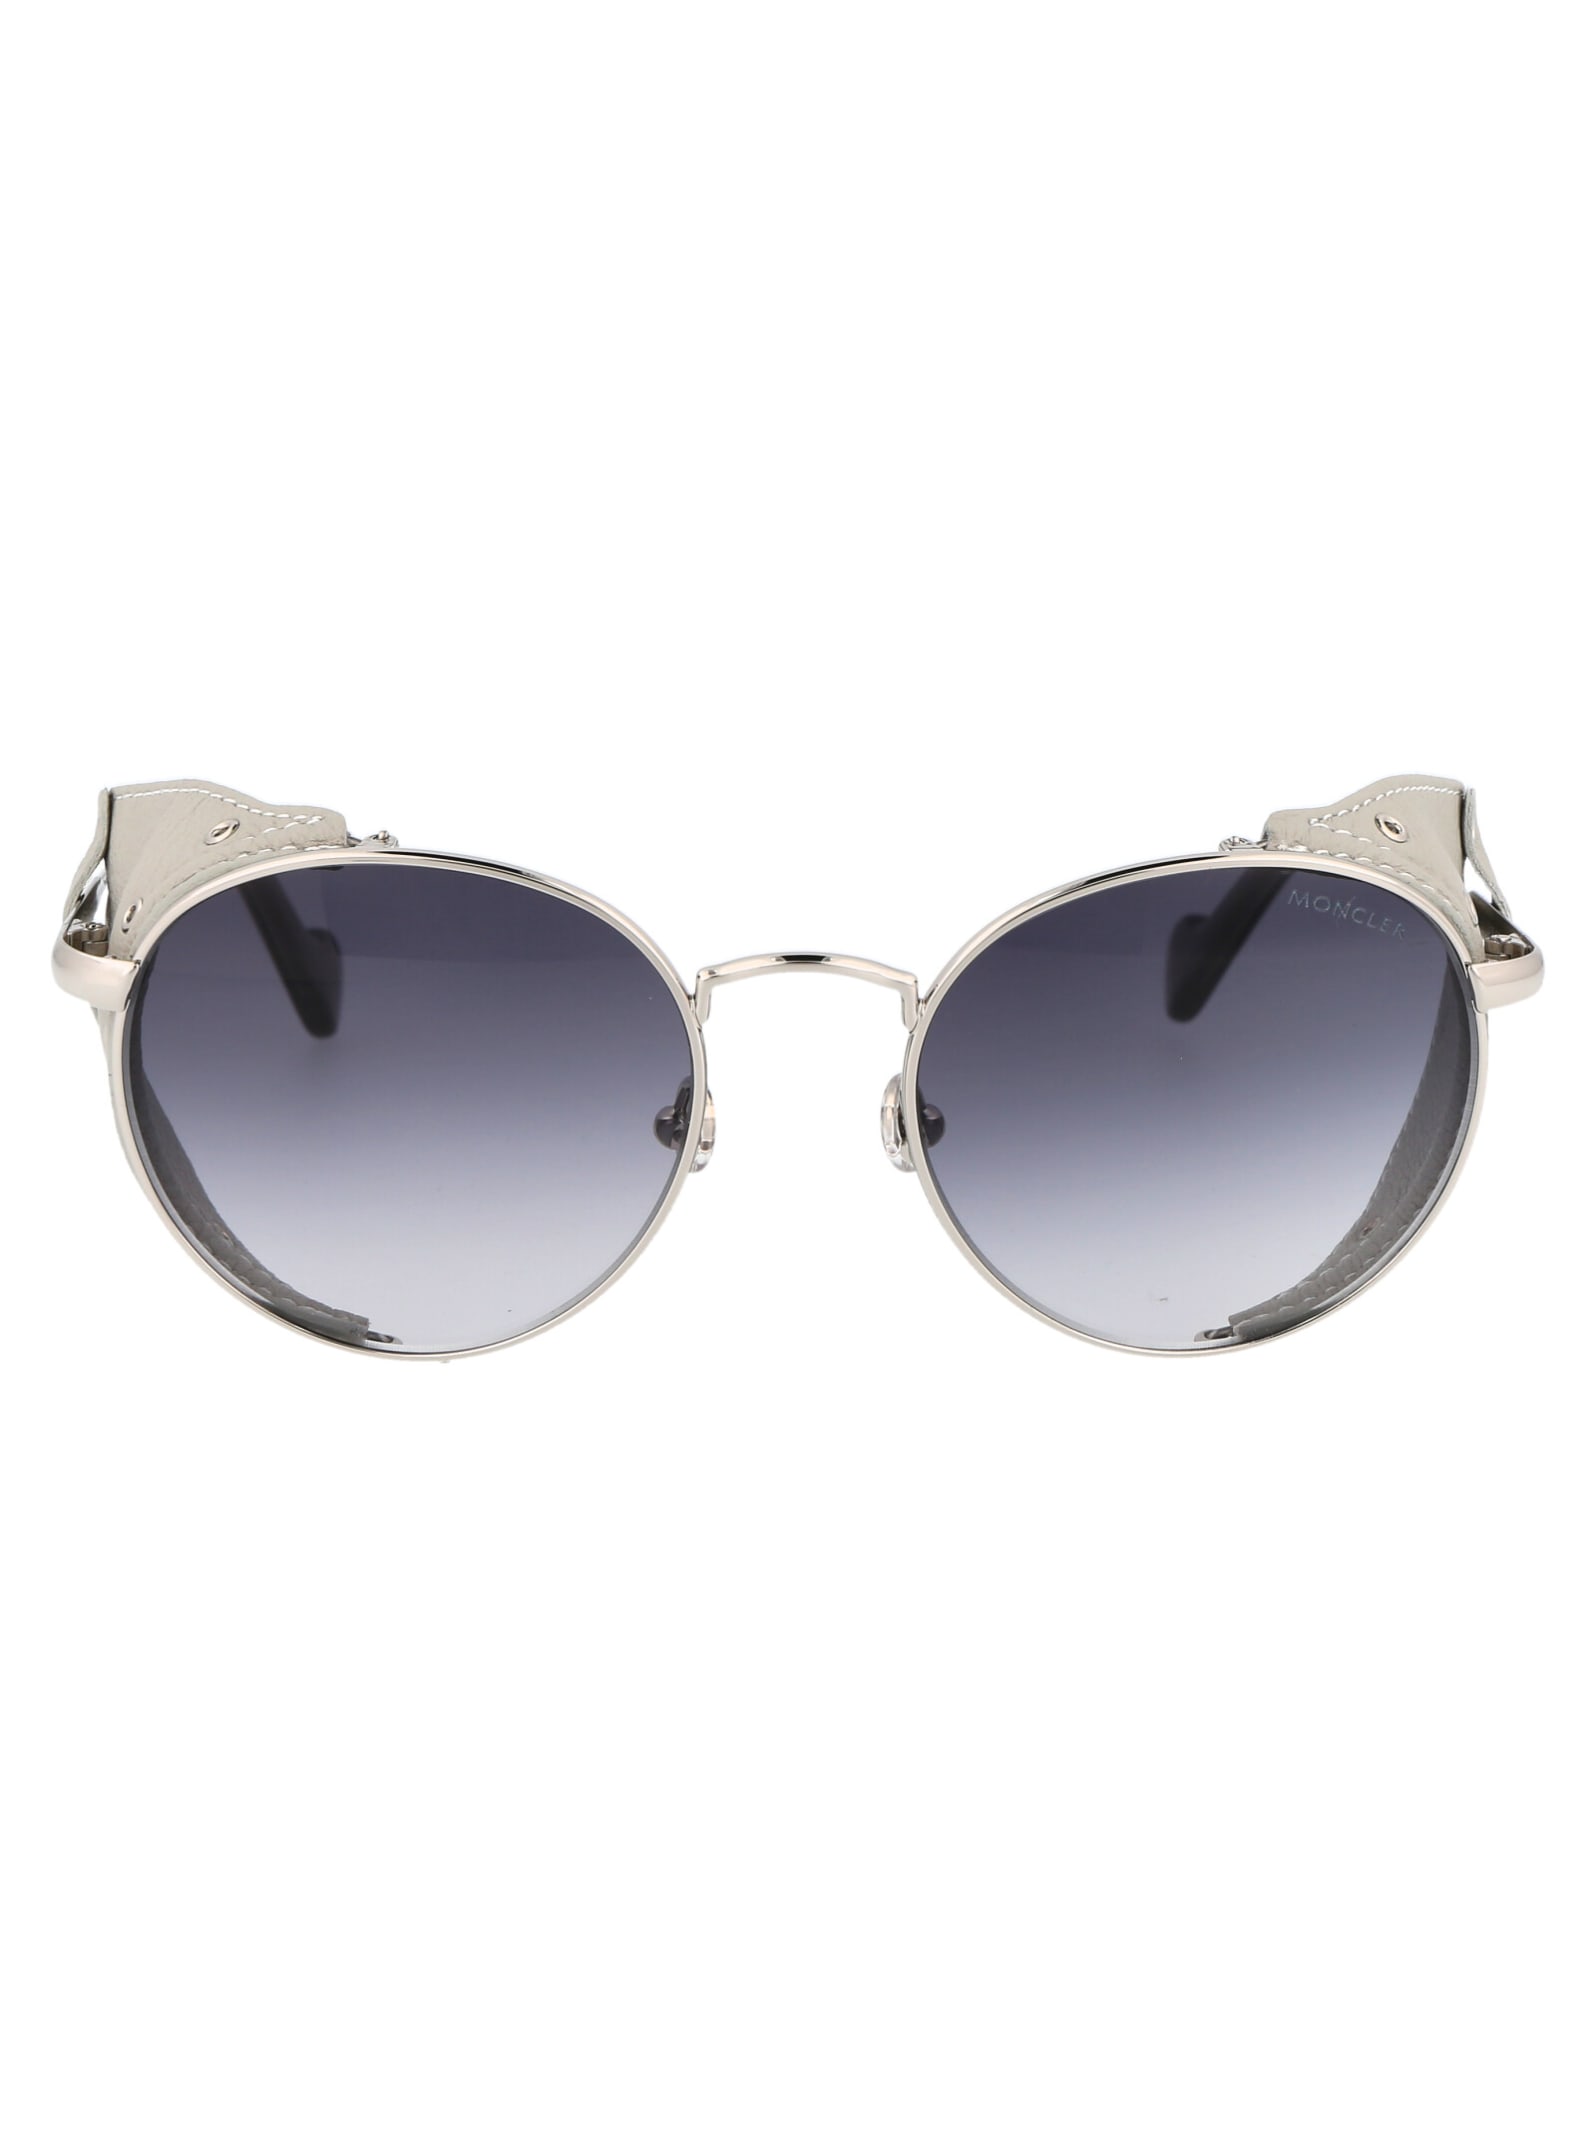 Moncler Eyewear Ml0182 Sunglasses